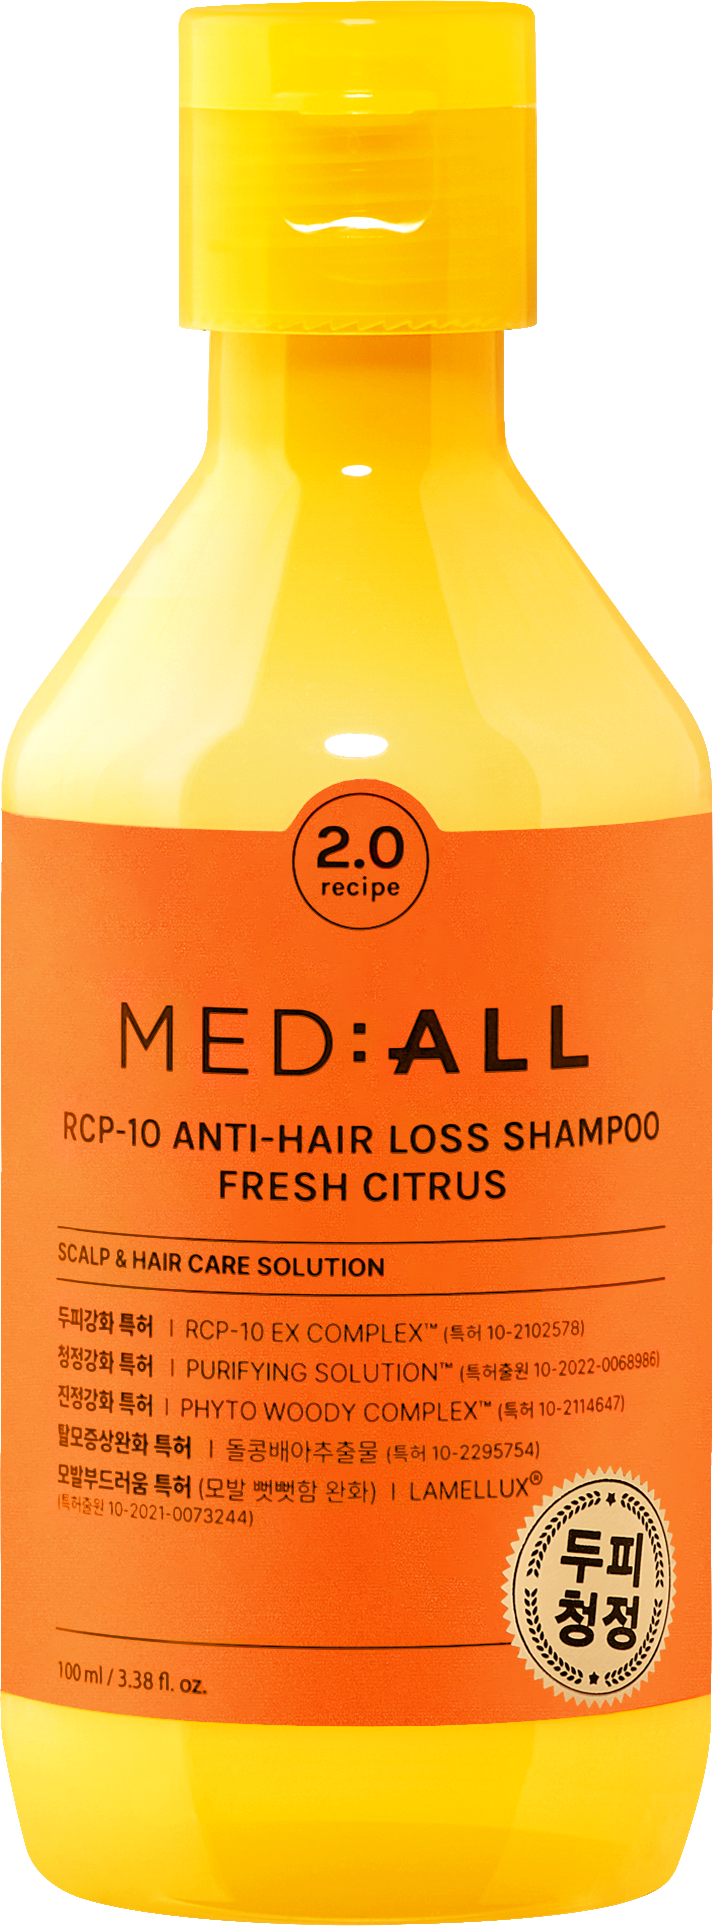 MED:ALL Шампунь RCP-10 для восстановления роста волос Свежий цитрус, 100 мл, 